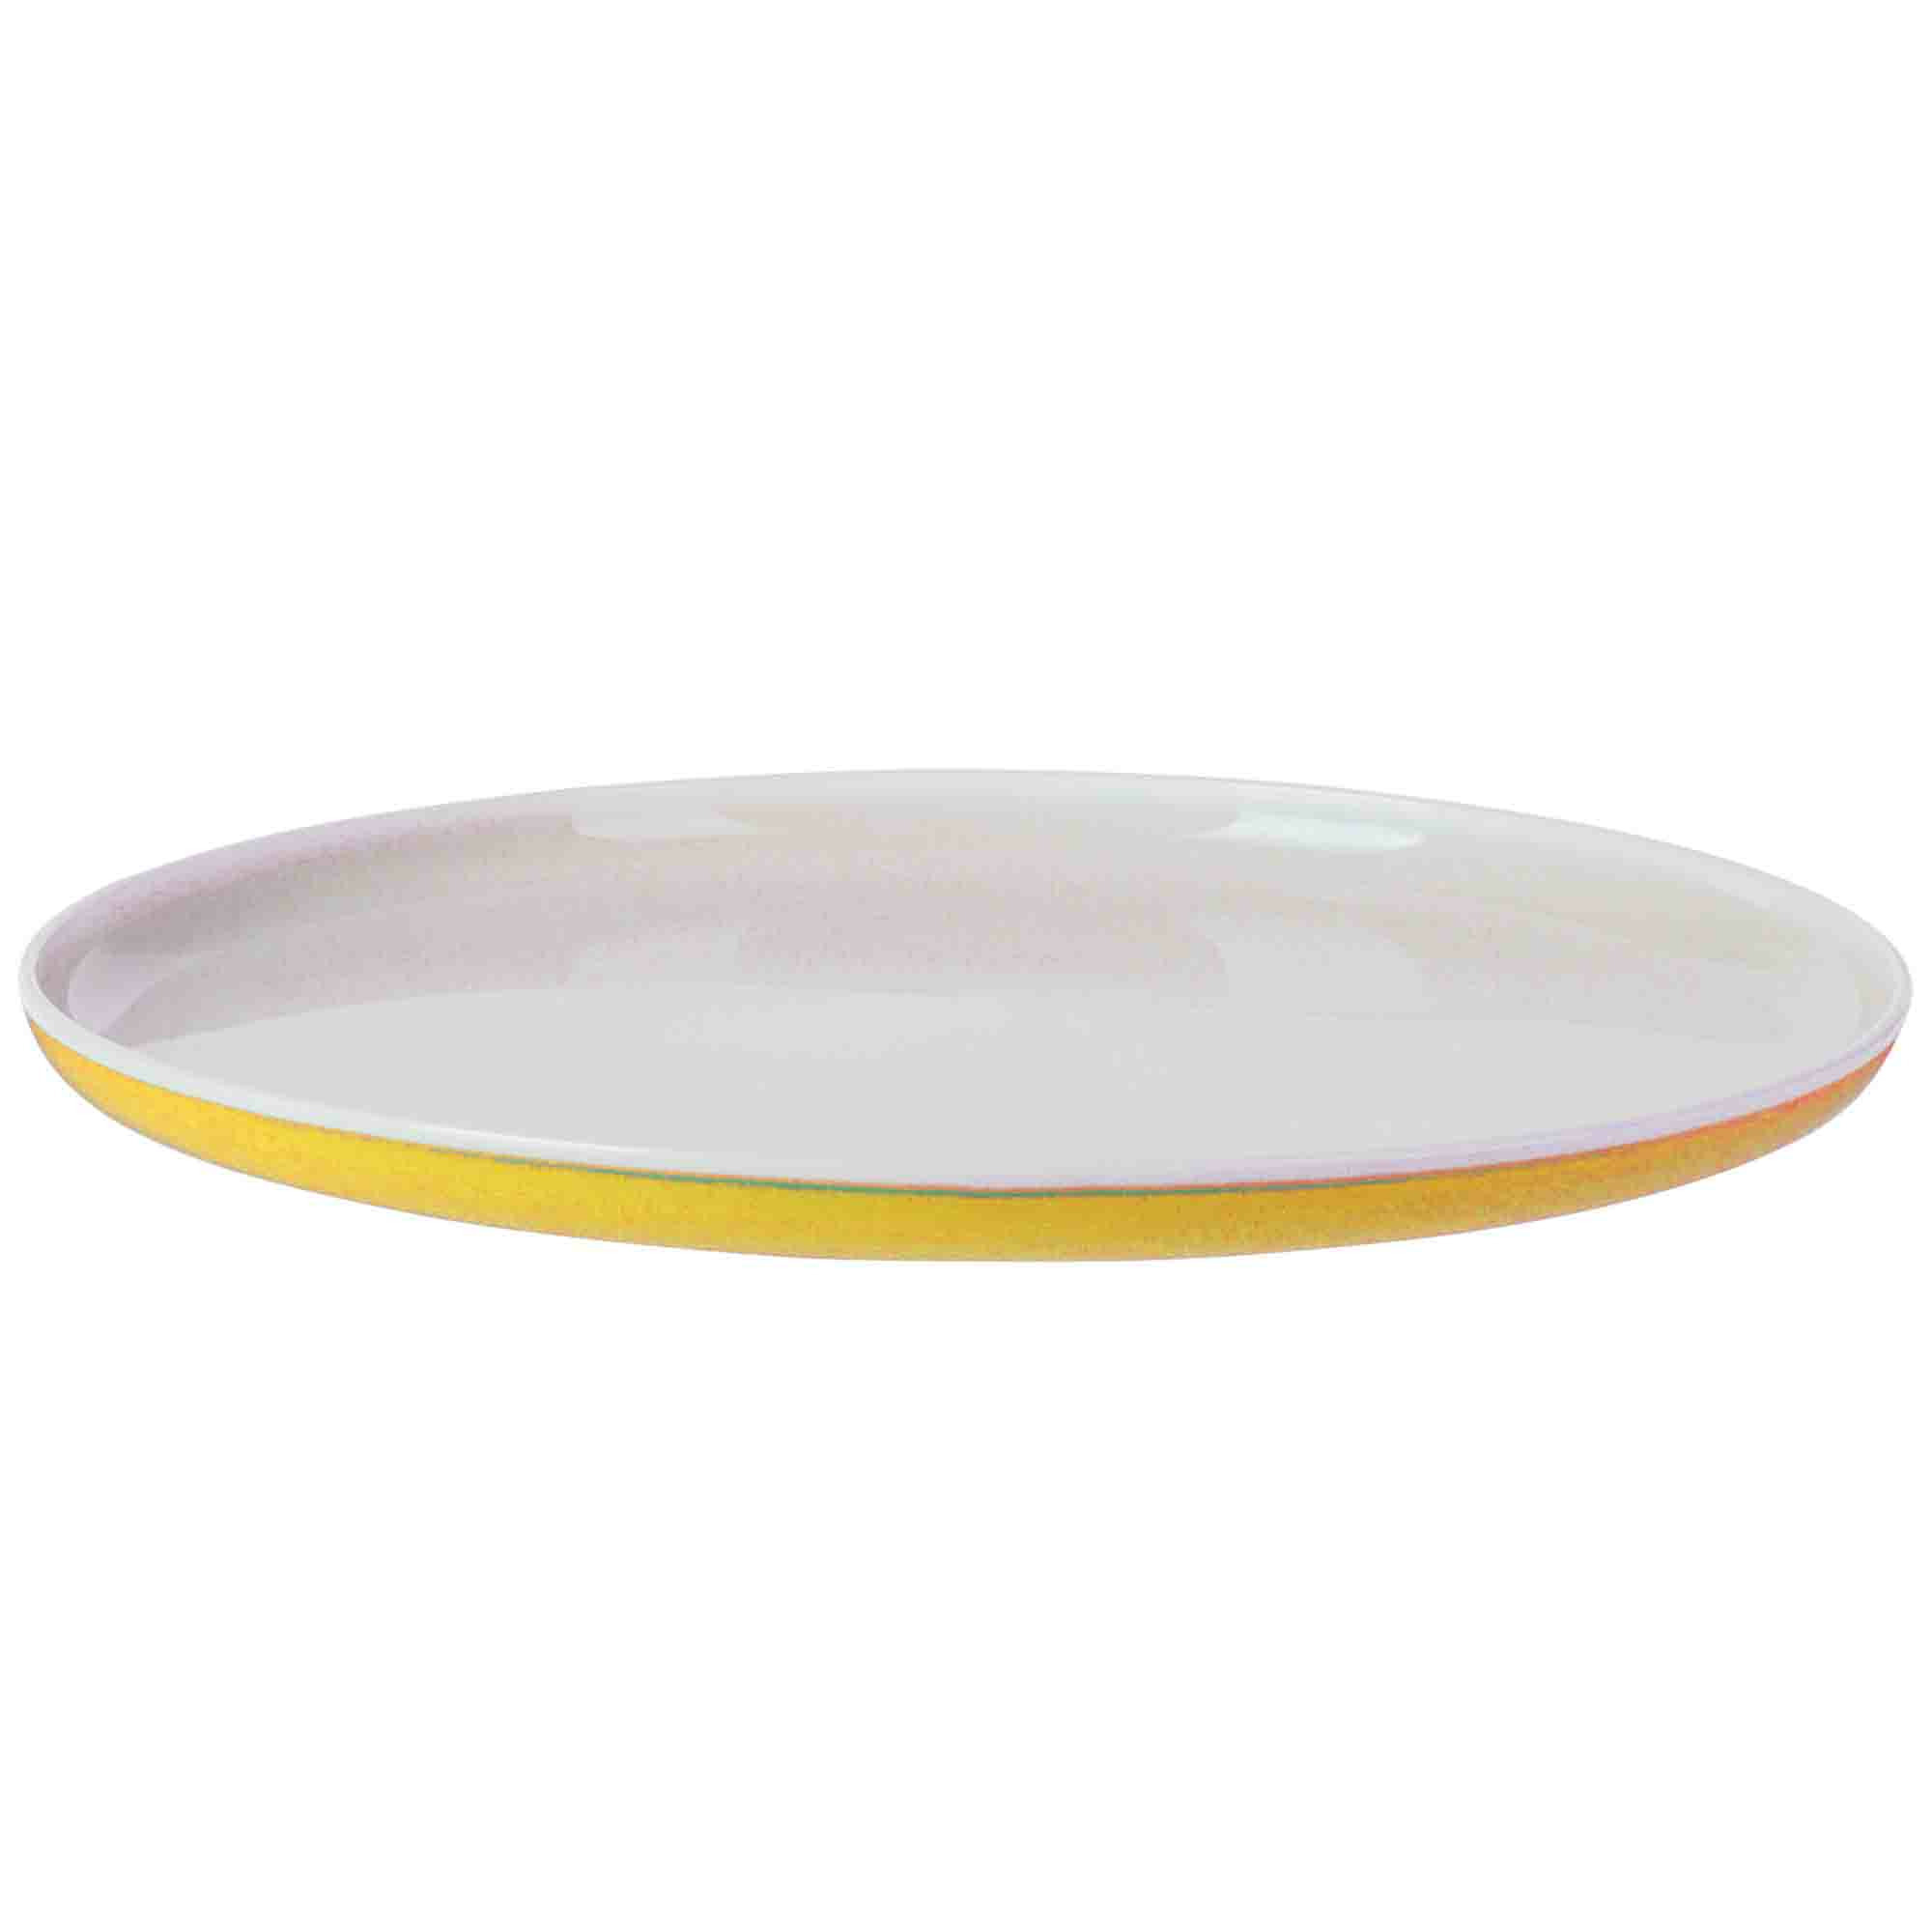 Onbreekbaar ontbijt/diner bord - geel - kunststof - 25 cm -